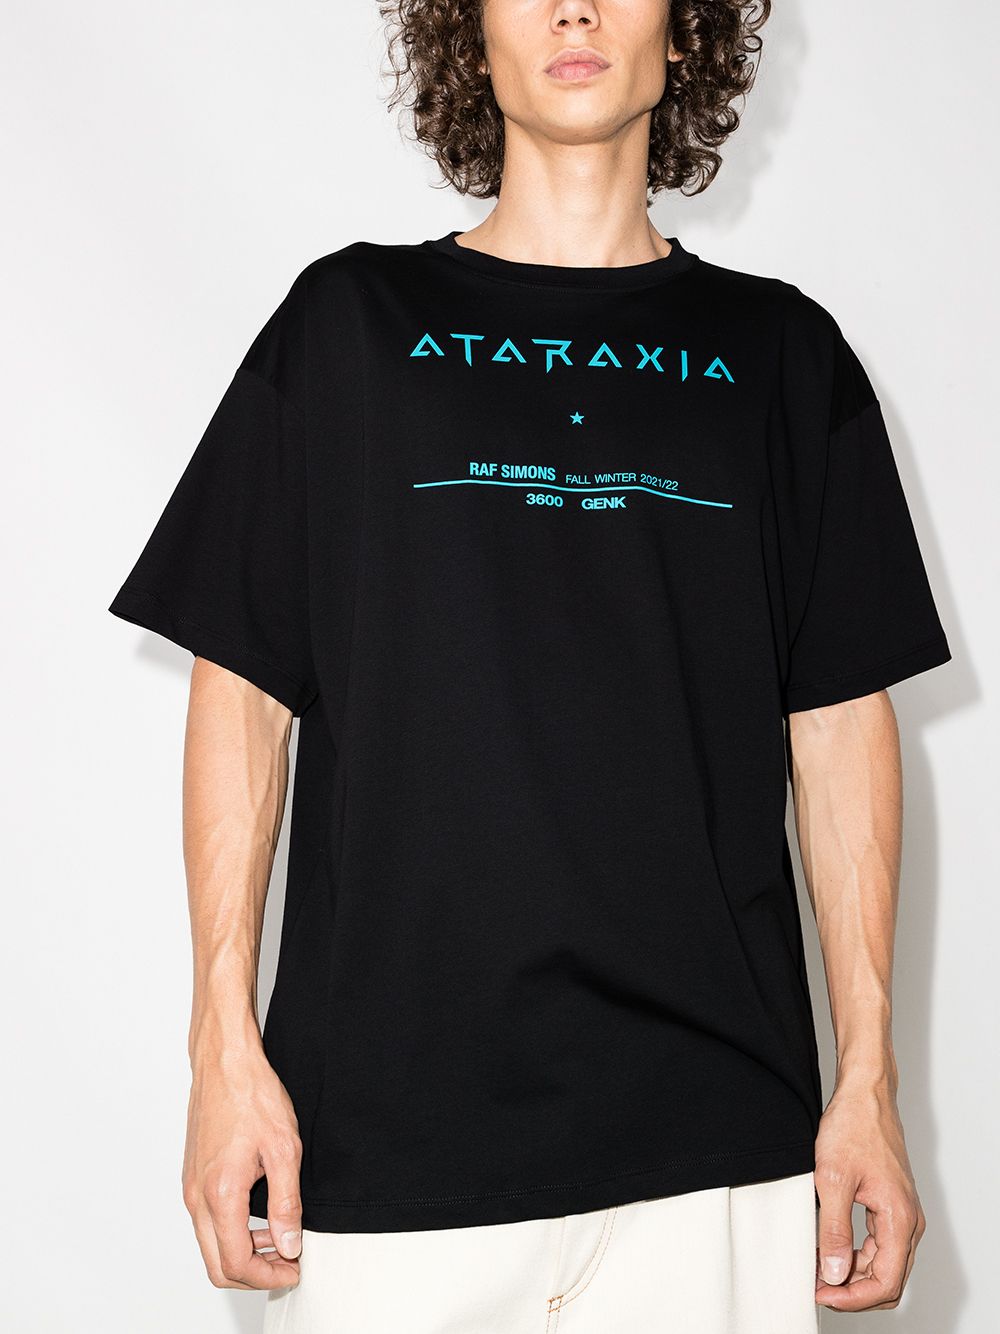 ATARAXIA TOUR T恤